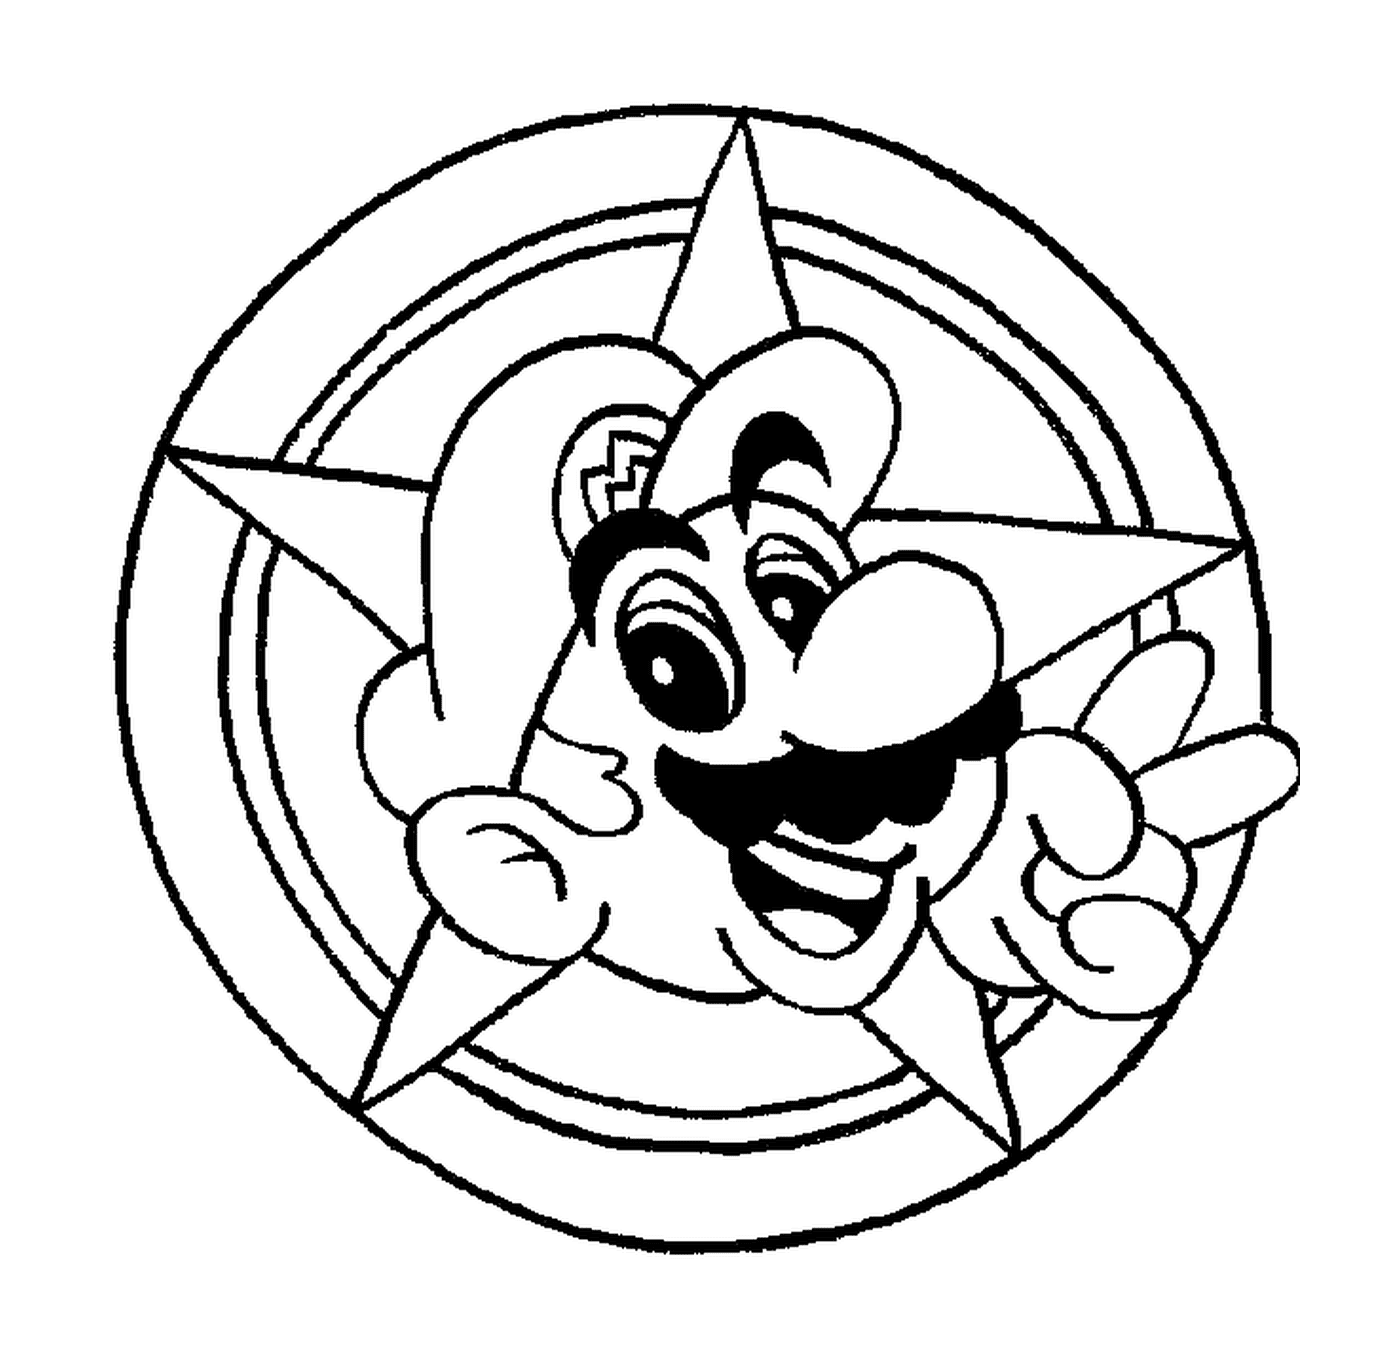   La tête de Mario dans un cercle 